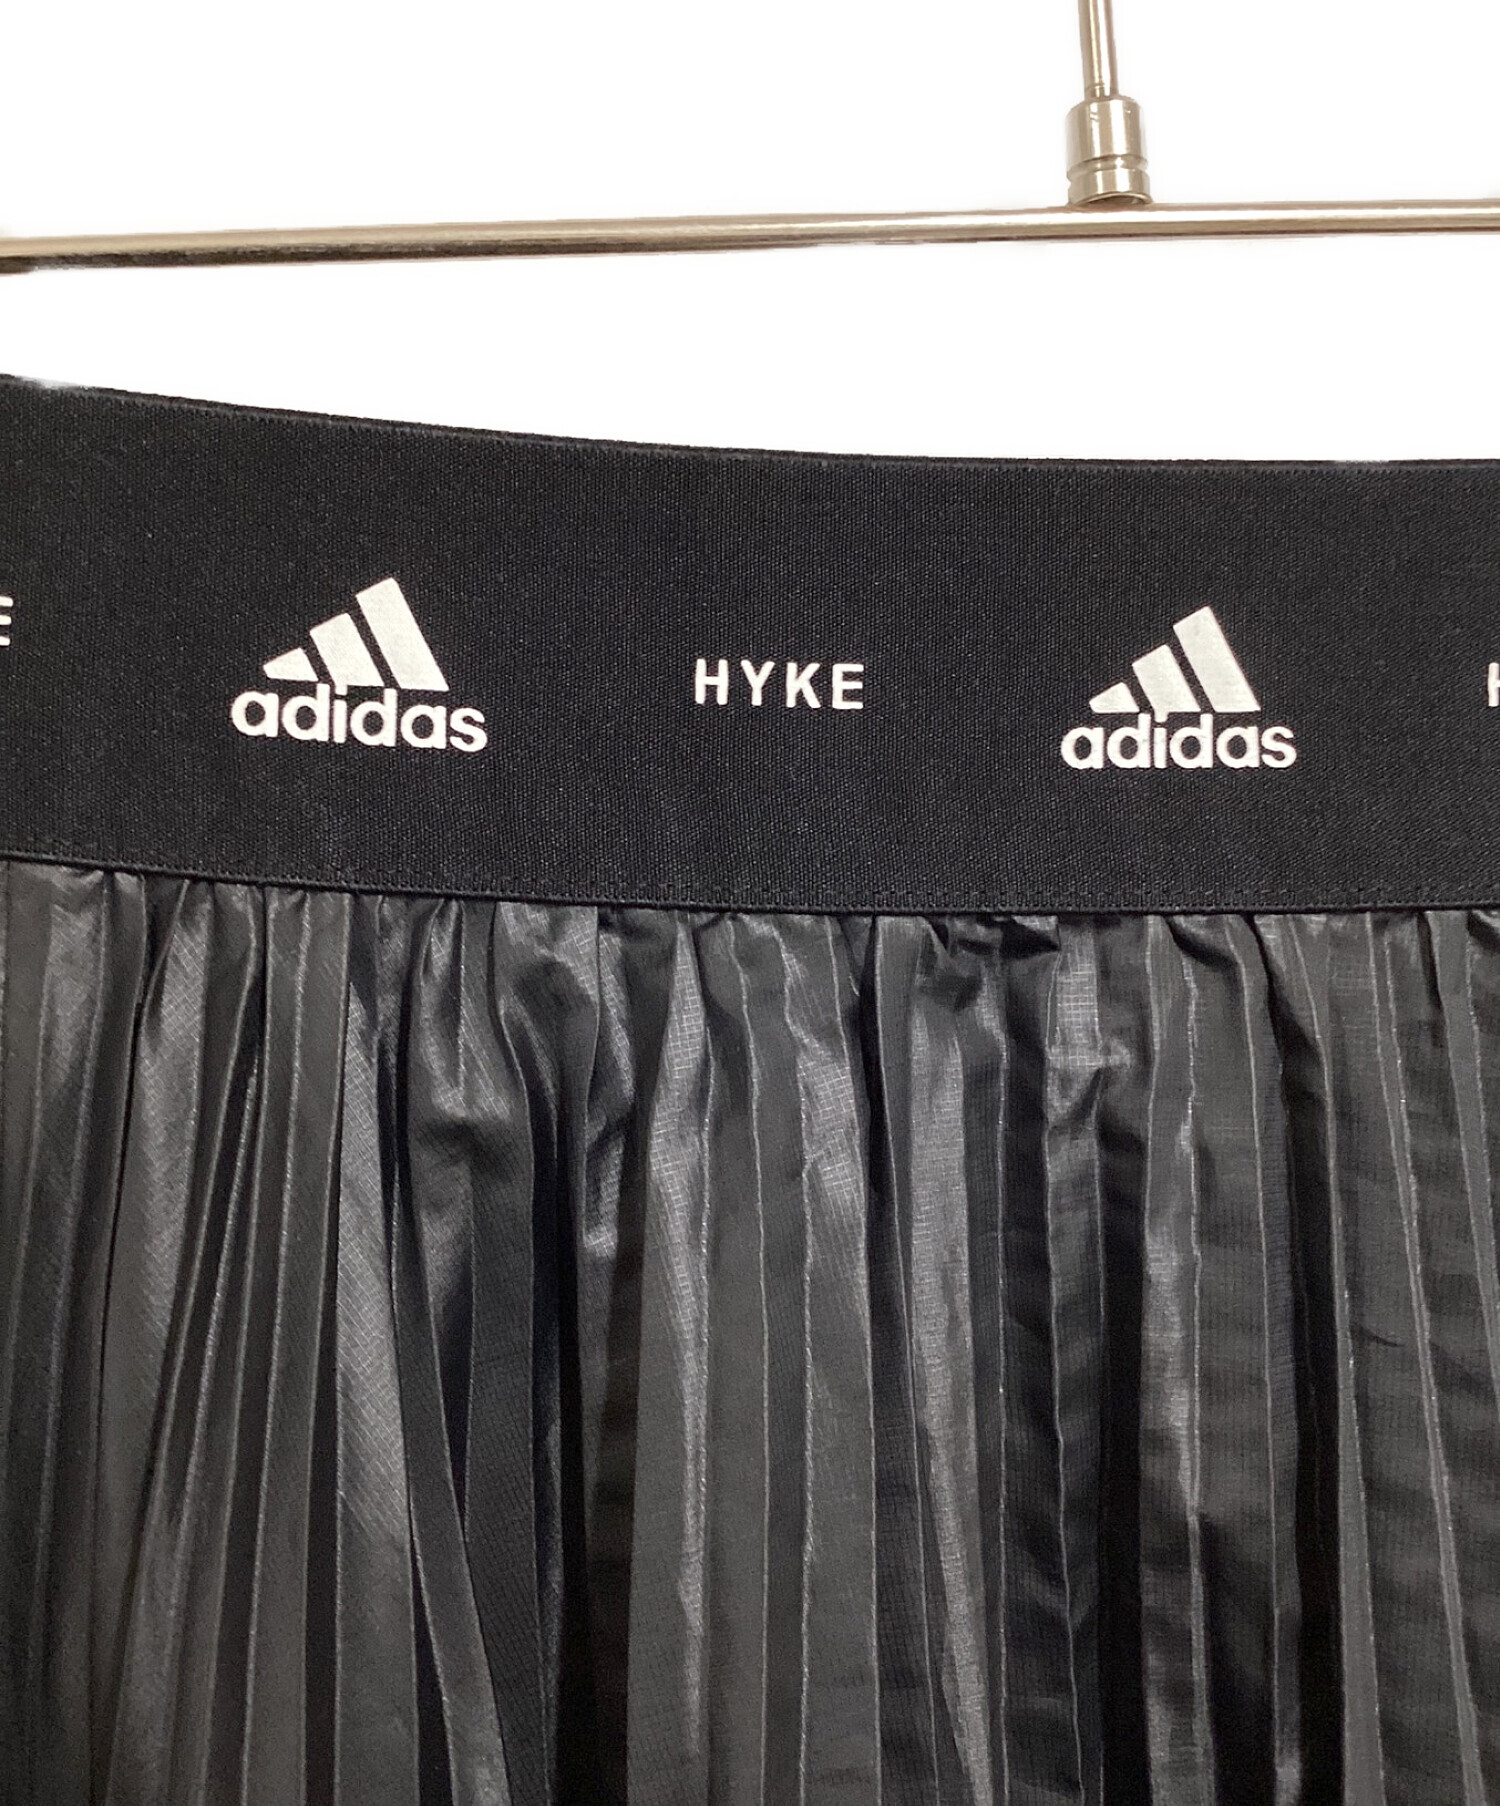 adidas (アディダス) HYKE (ハイク) WRAP SKIRT ブラック サイズ:L